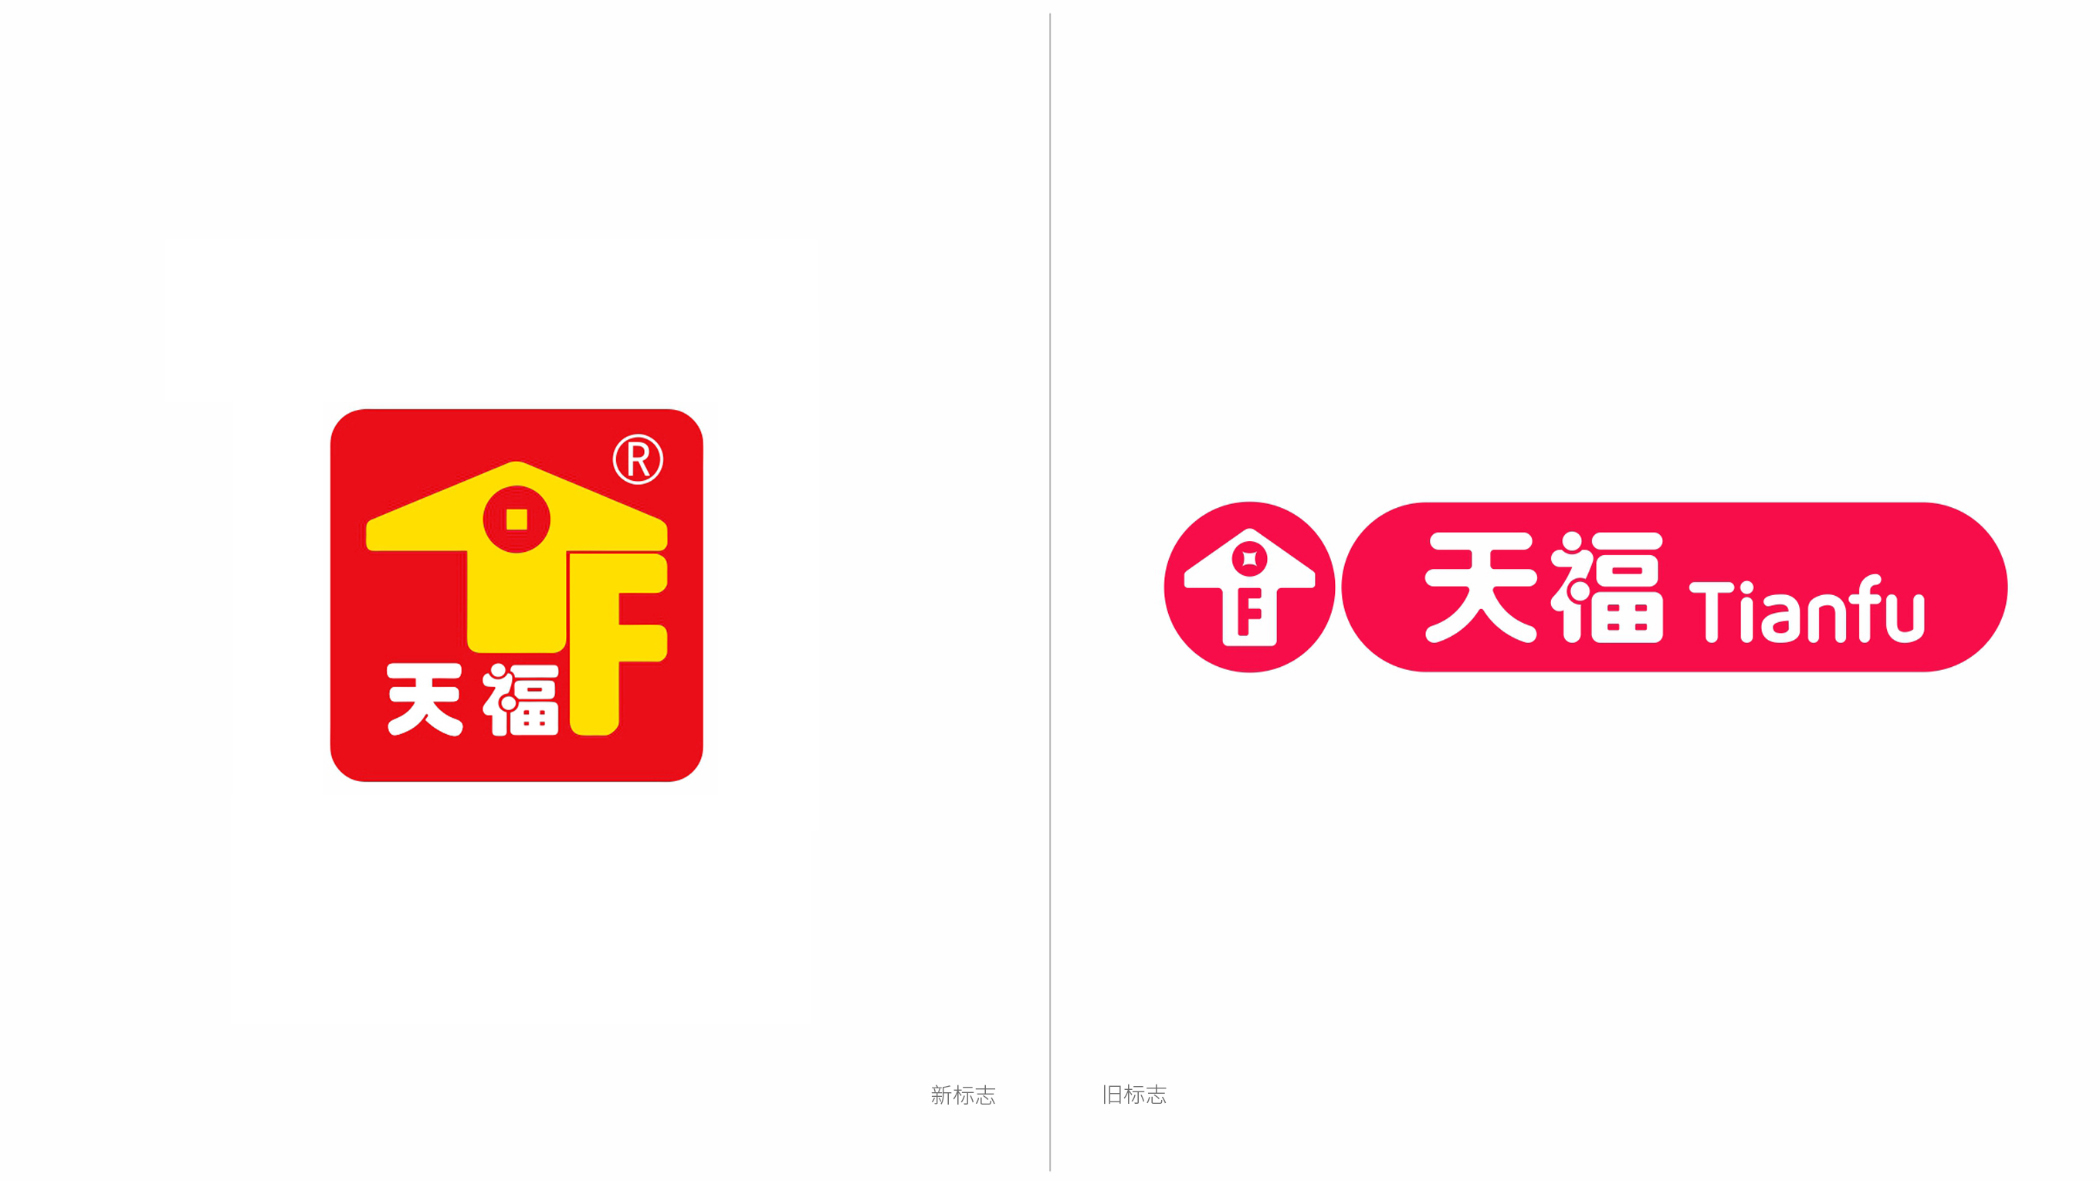 天福便利店品牌形象升级,全新logo正式启用